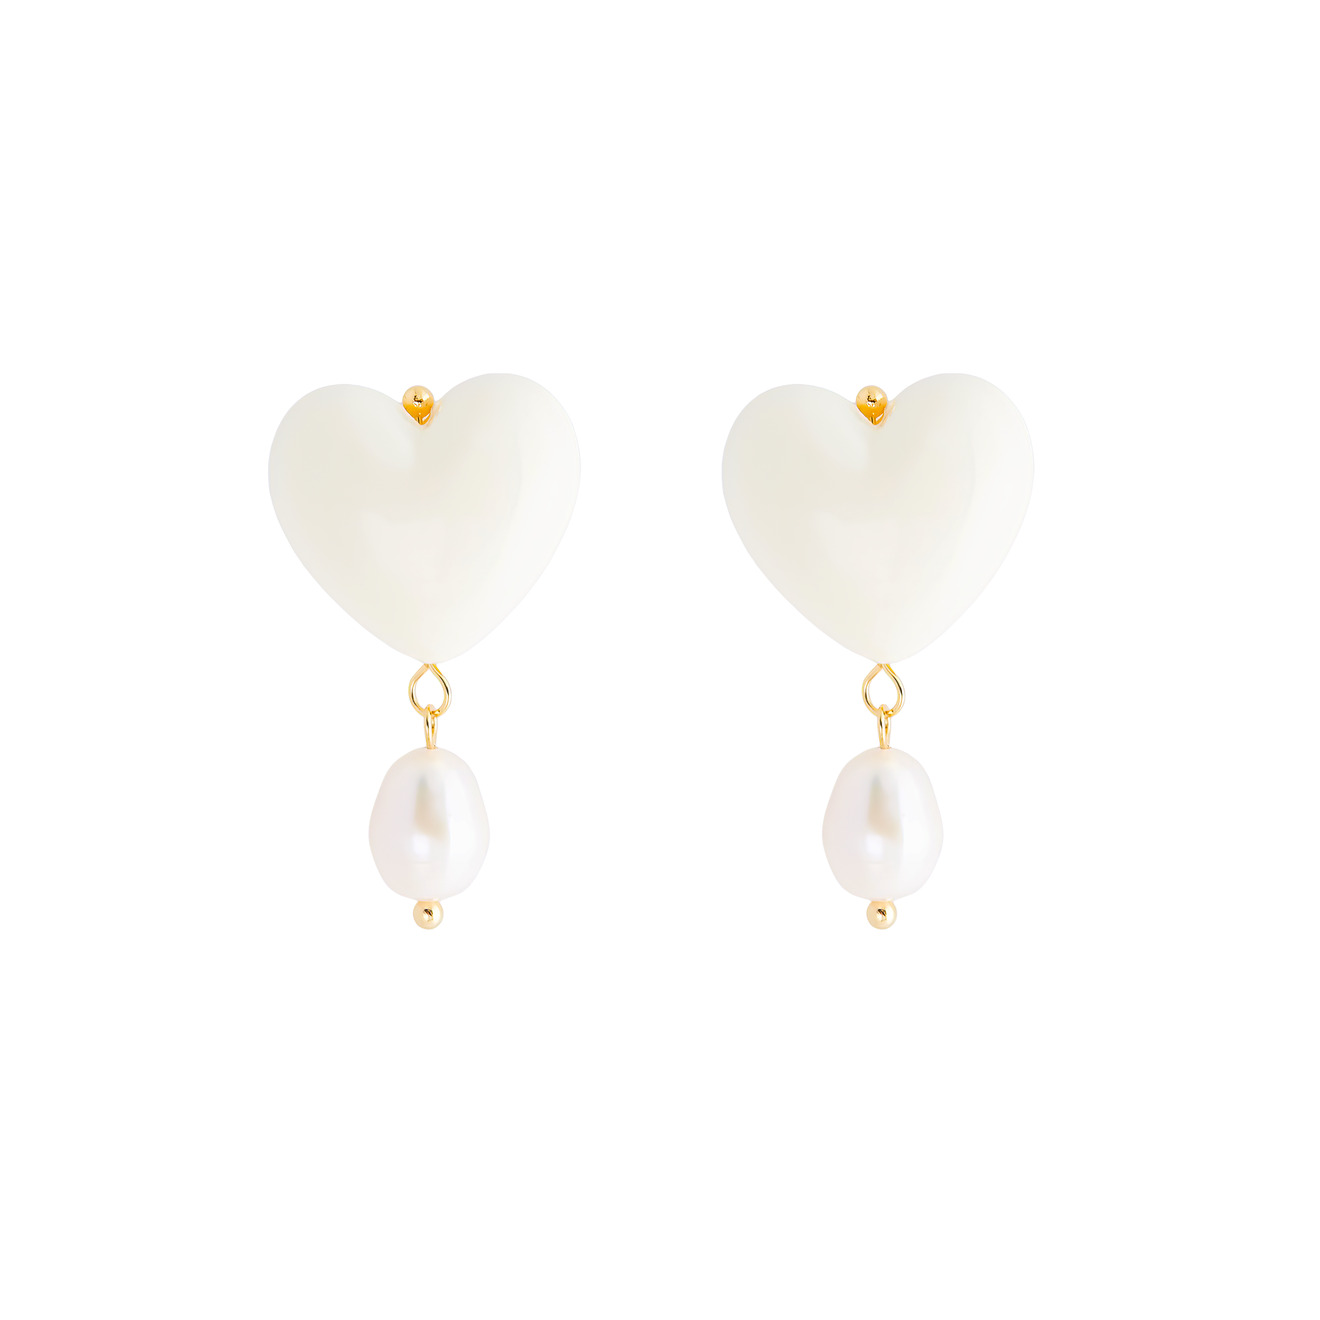 Aqua Белые серьги-сердечки с подвесками из жемчужин aqua белые серьги с золотистыми шариками